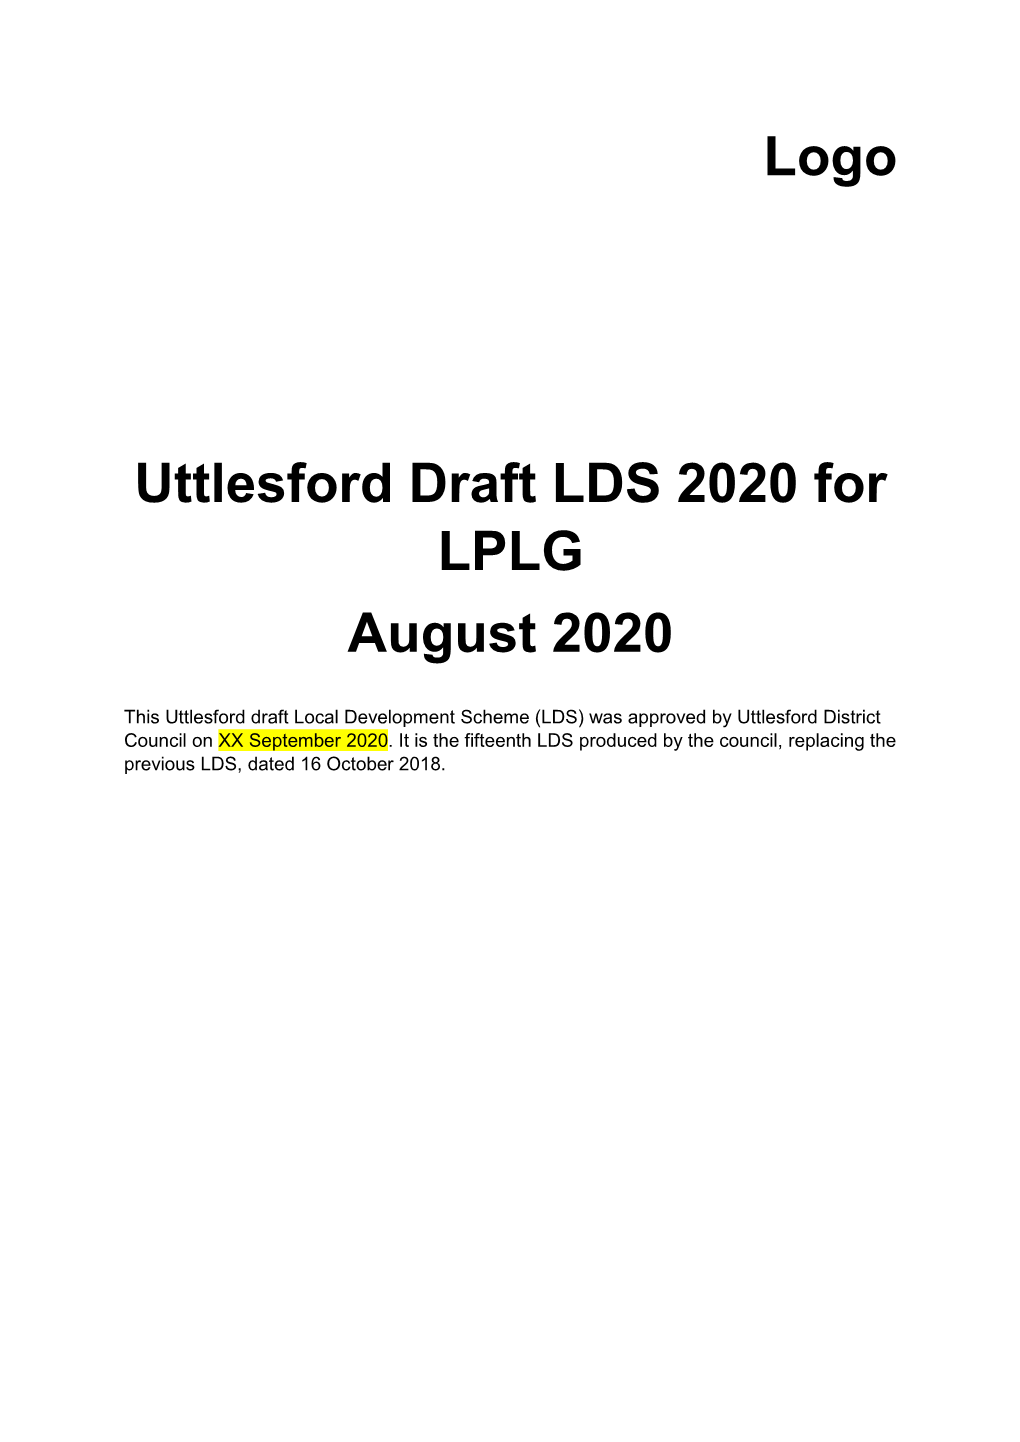 Logo Uttlesford Draft LDS 2020 for LPLG August 2020